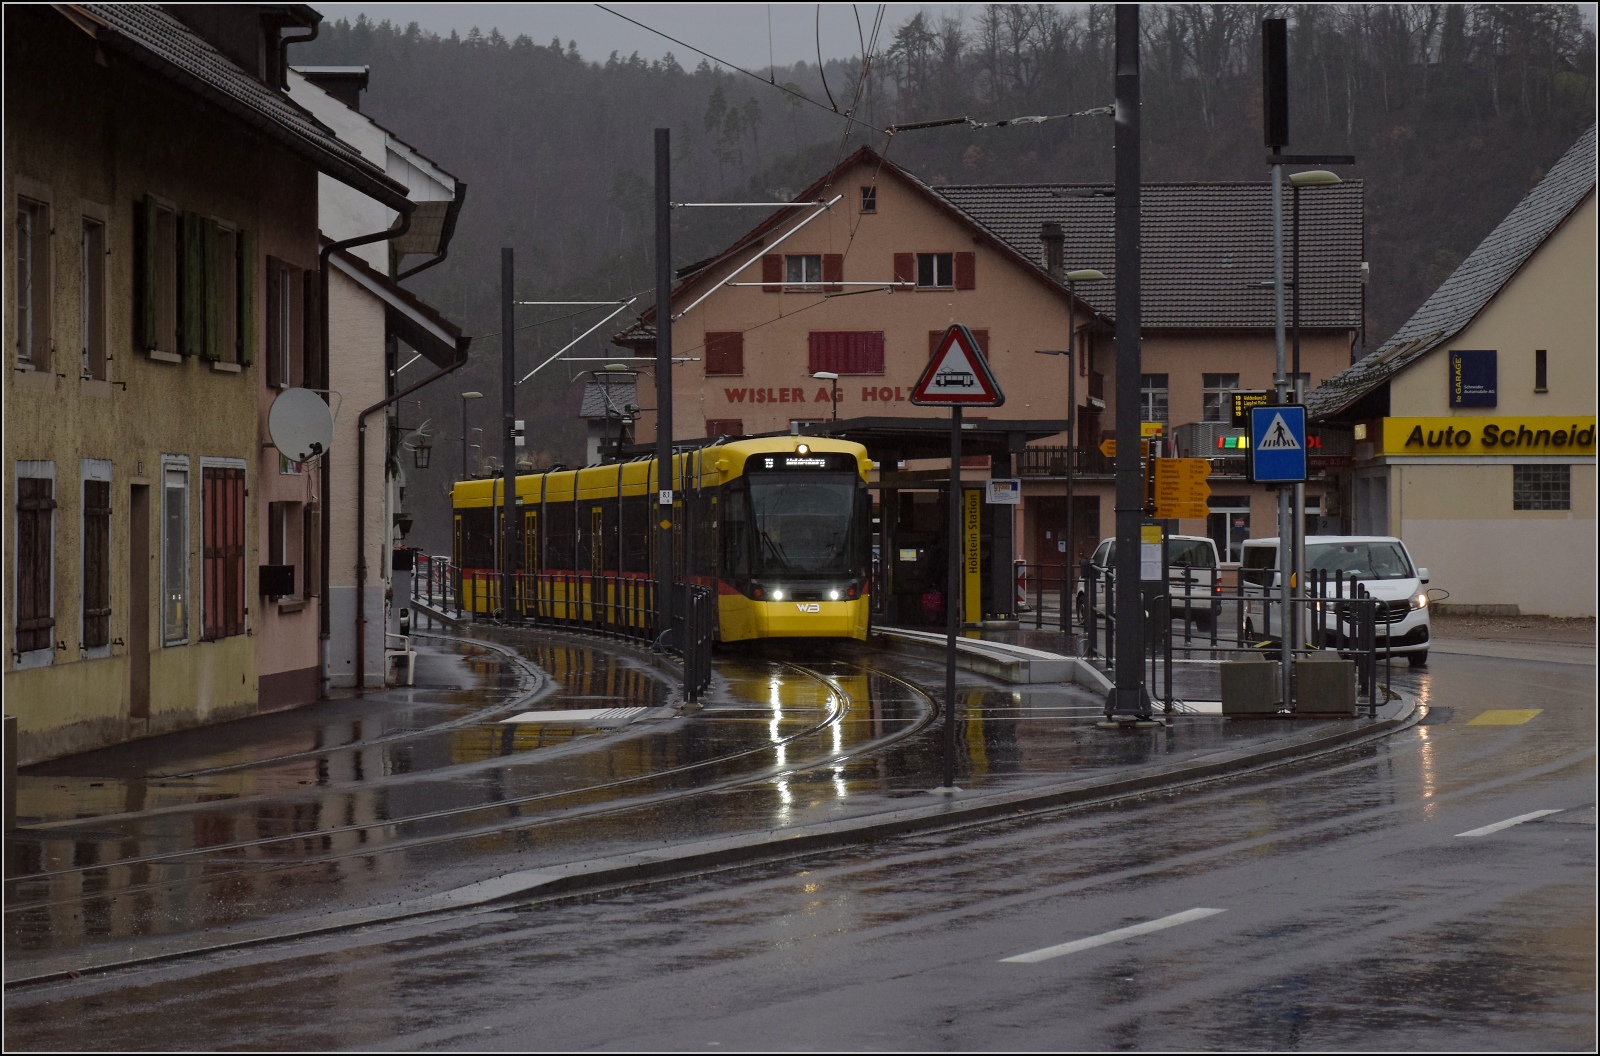 Tramlink Be 6/8 101 in Hölstein. Der Bahnsteig hat ein Gleis verloren und die Kreuzungsstelle aus dem Dorf rausgewandert. Dezember 2022.